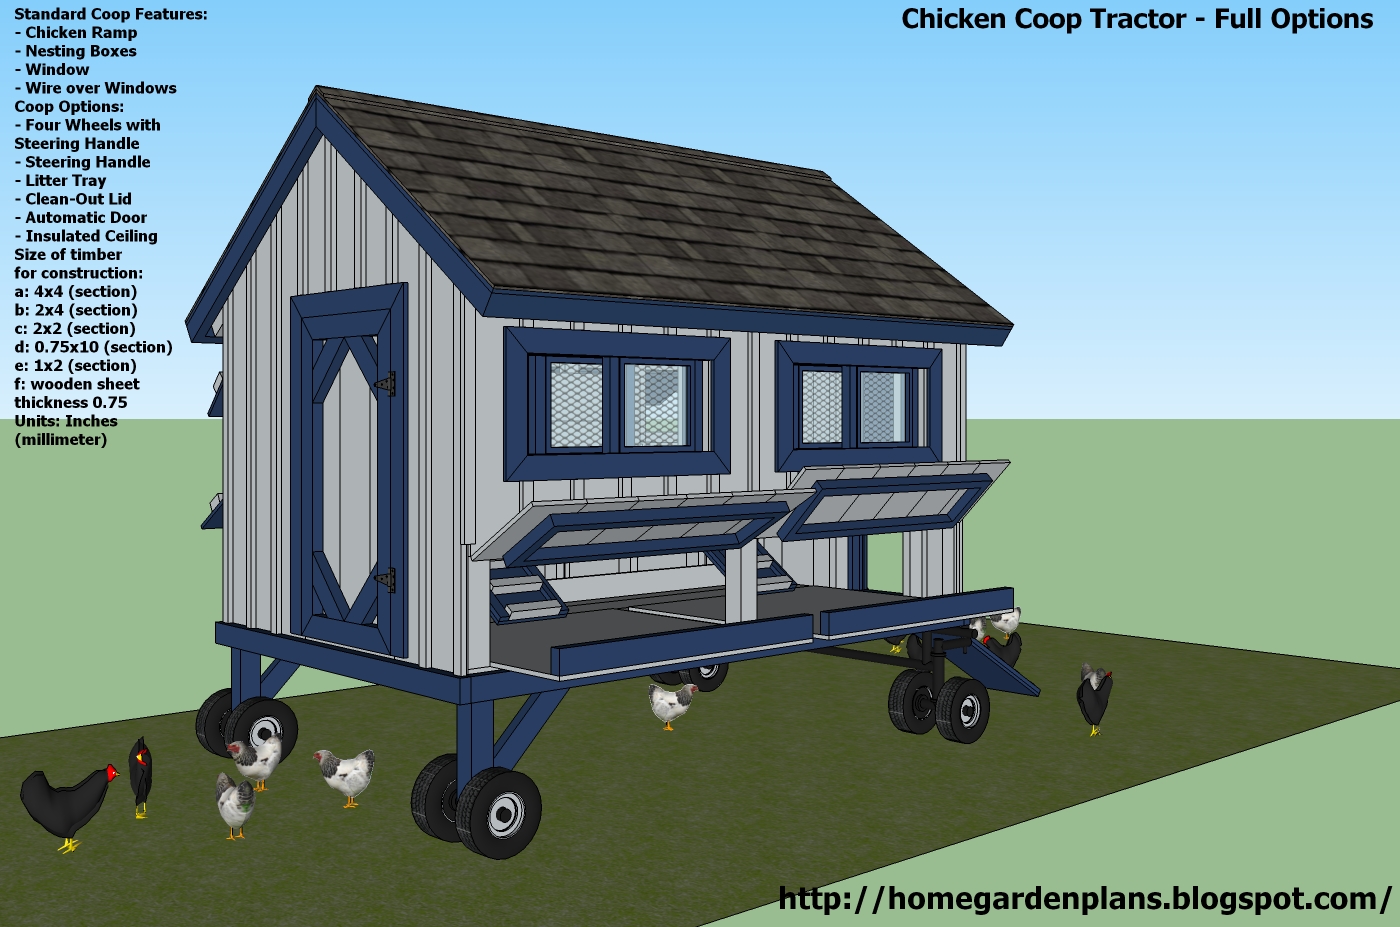 Chicken Coop Design Chicken coop tractor plans